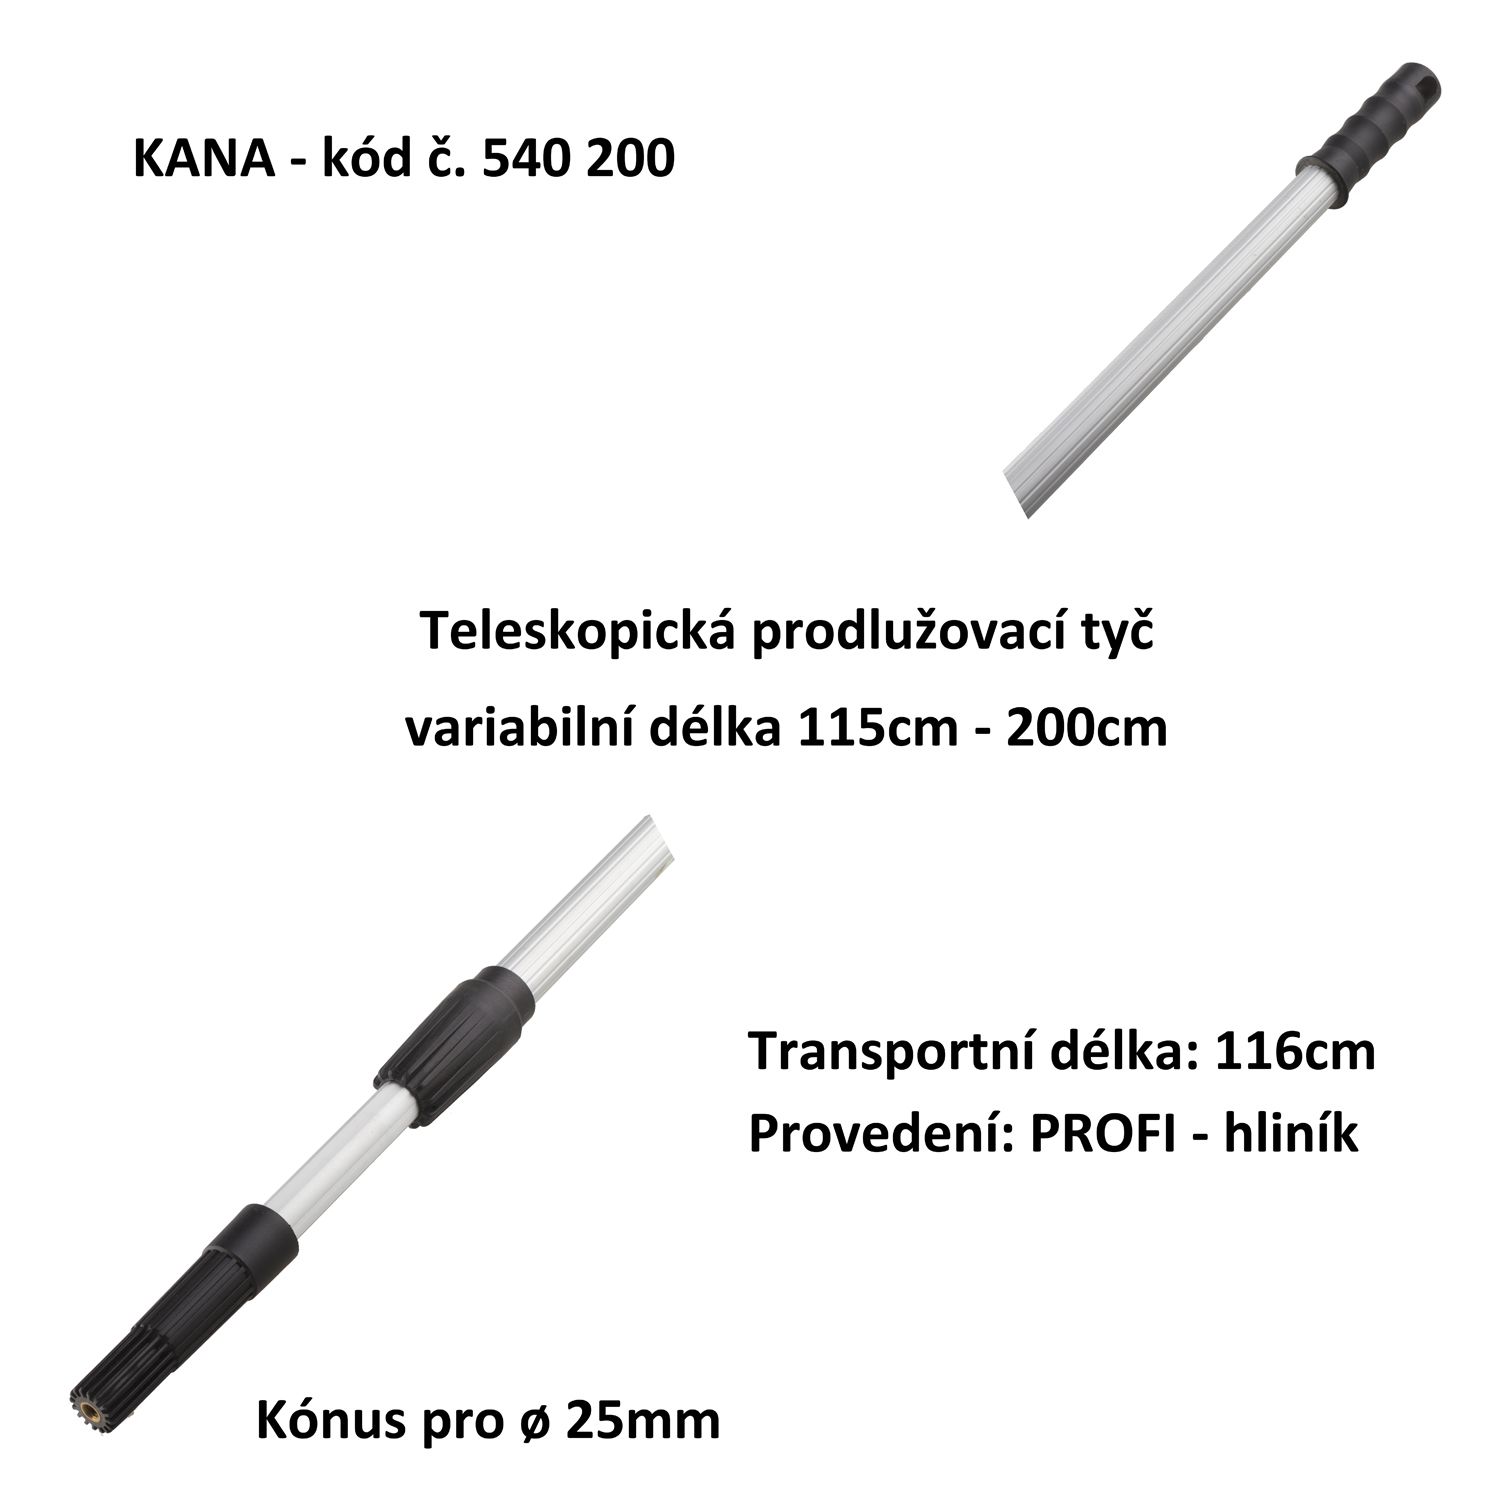 Teleskopická Prodlužovací tyč- hliník PROFI 115-200cm (KANA 540200)